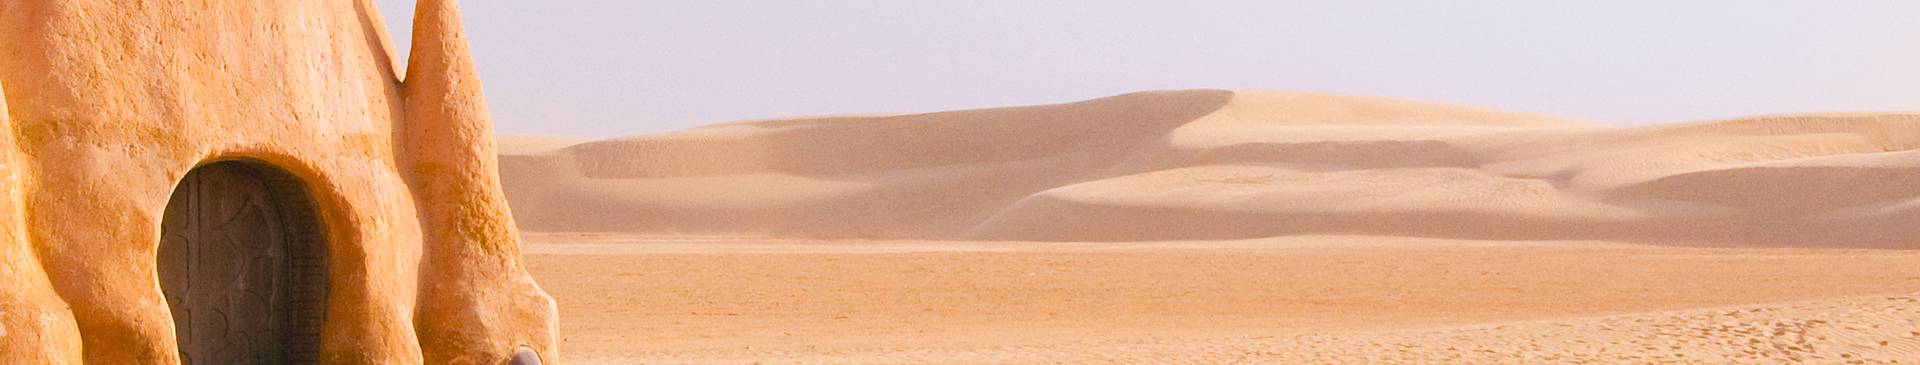 Viaggi nel deserto in Tunisia